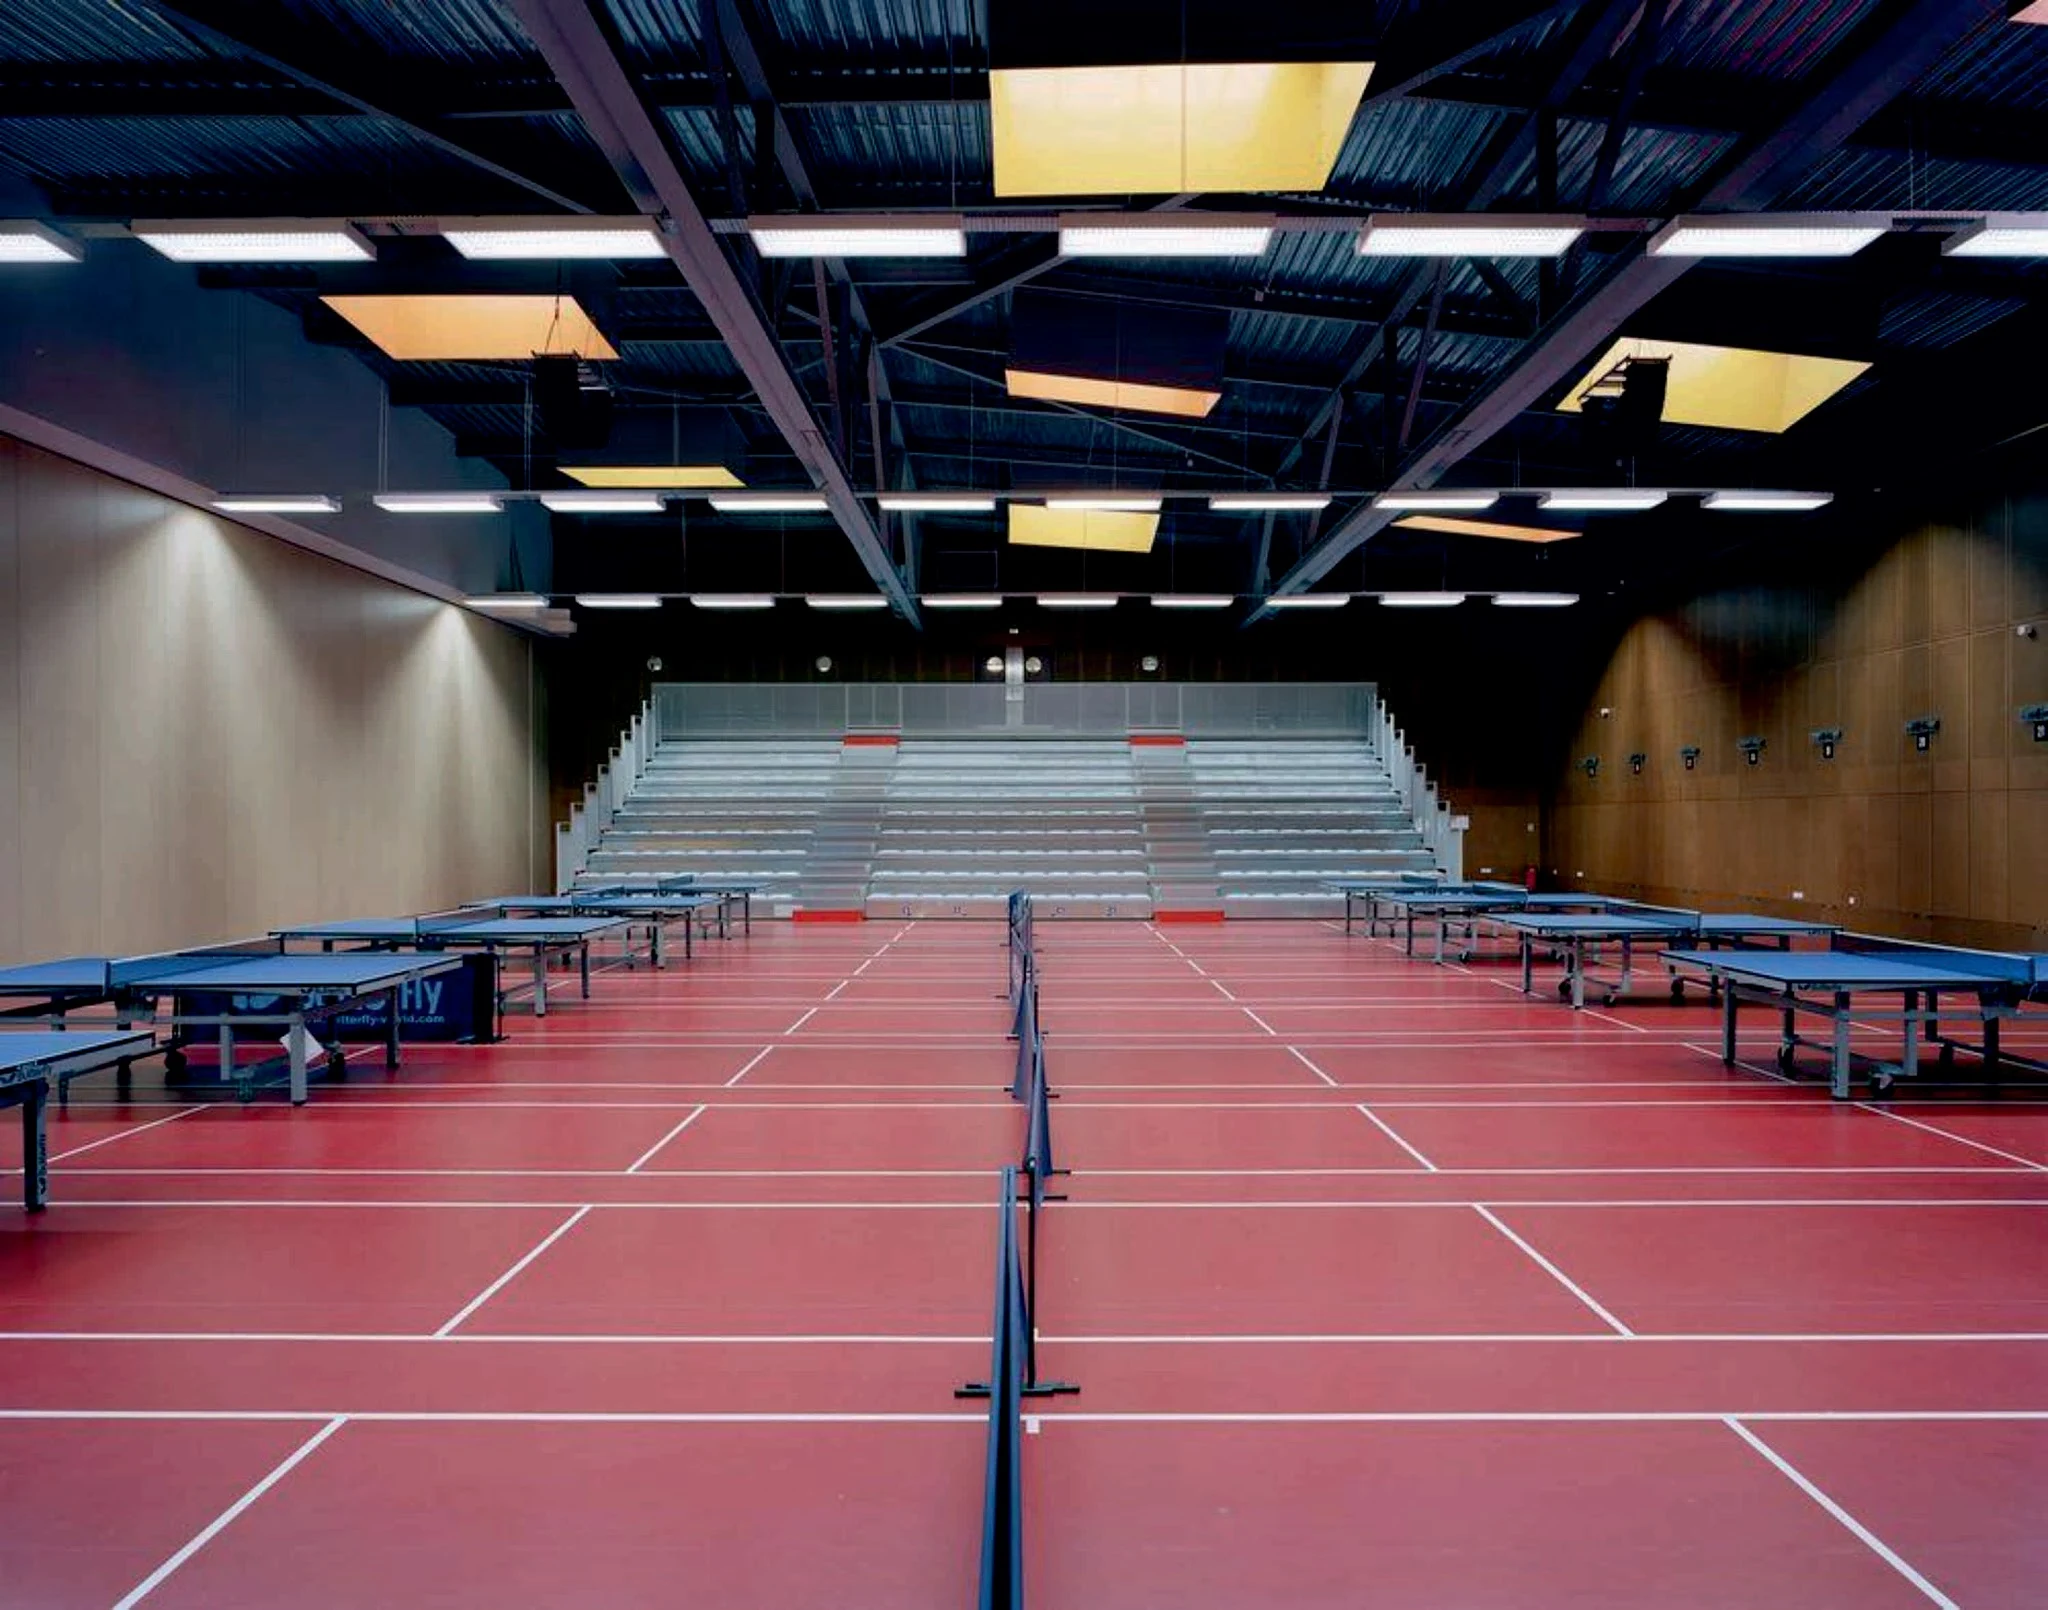 Теннисный бульвар. Лефортово теннисные корты. Фергана теннисный корт. Зал для настольного тенниса. Спортивный зал.